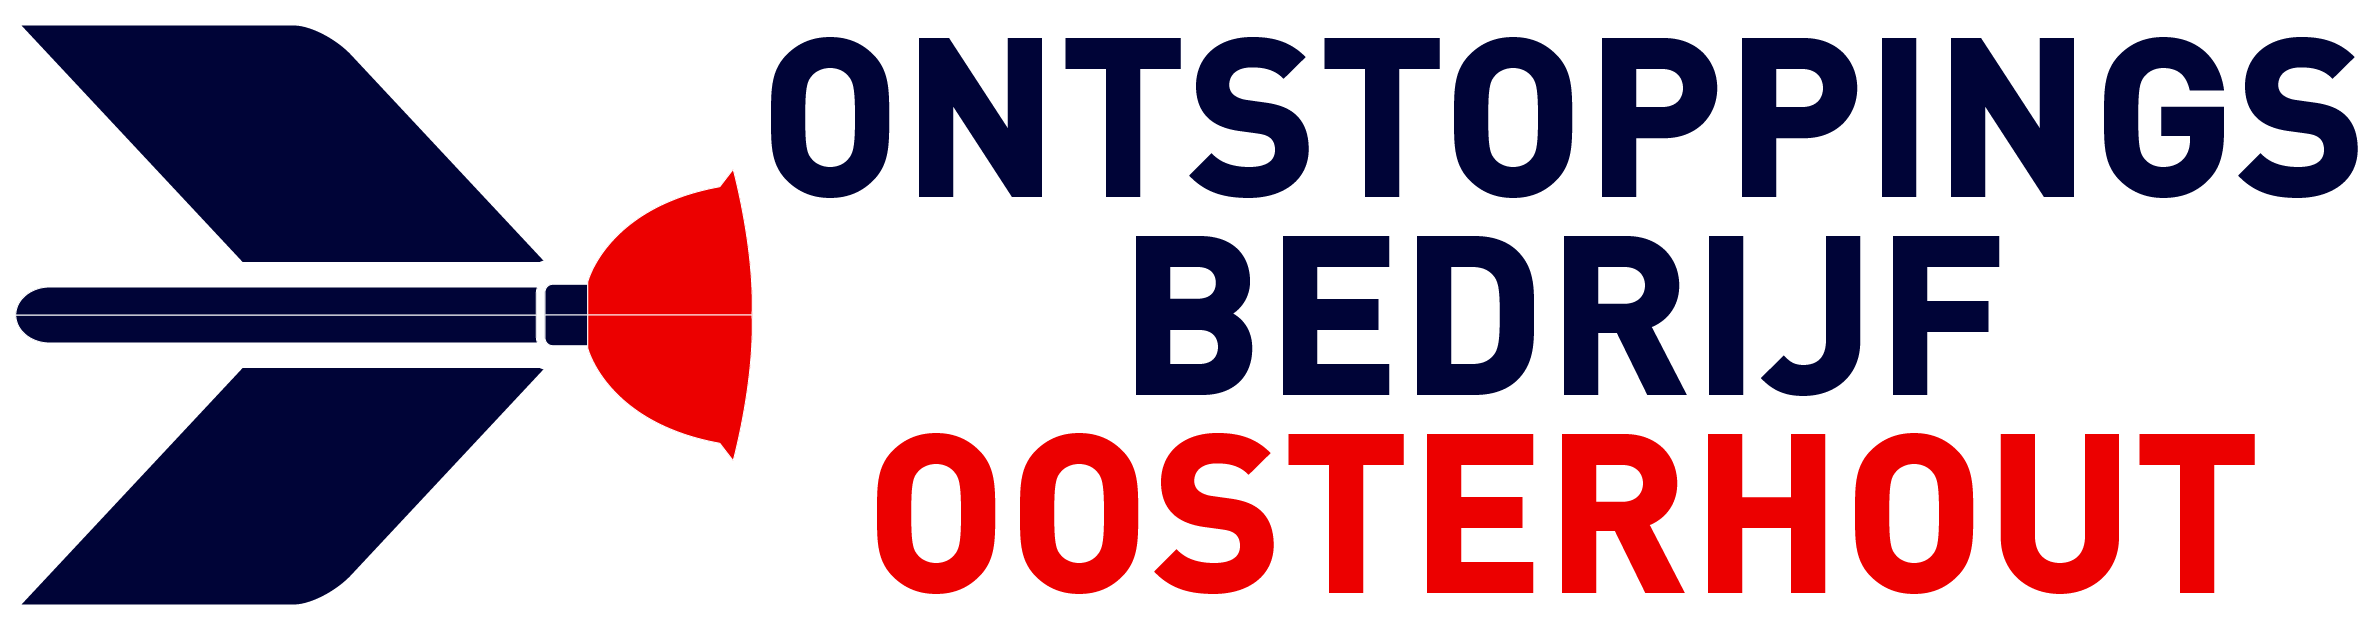 Ontstoppingsbedrijf Oosterhout logo